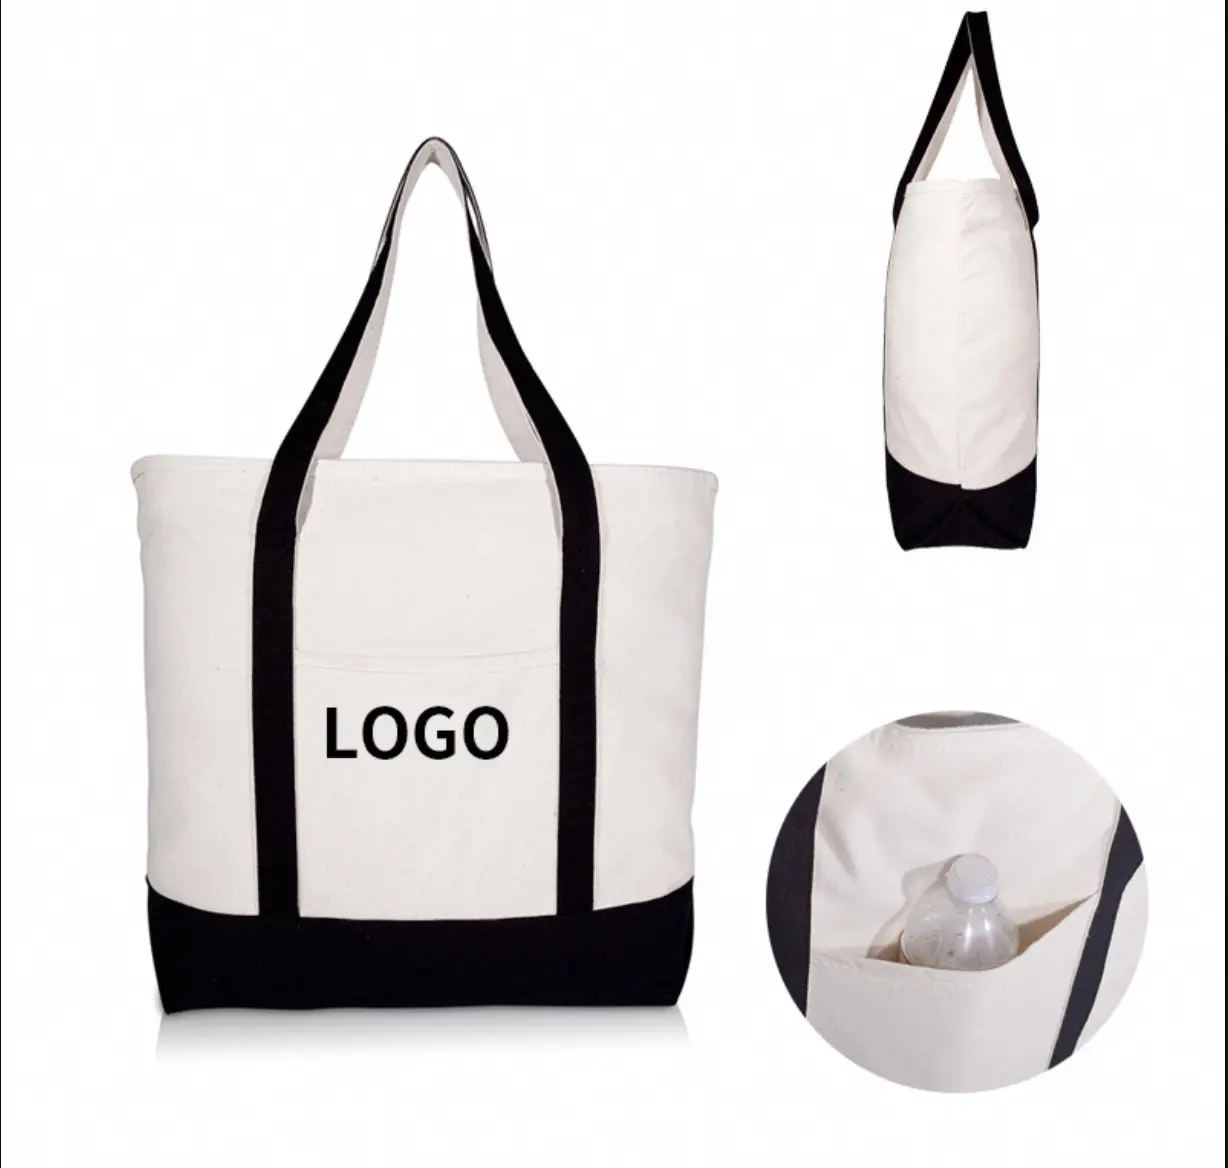 Pamela kadin tuval Tote çanta yüksek kalite özel özel baskılı Logo ile pamuk Tote çanta toptan